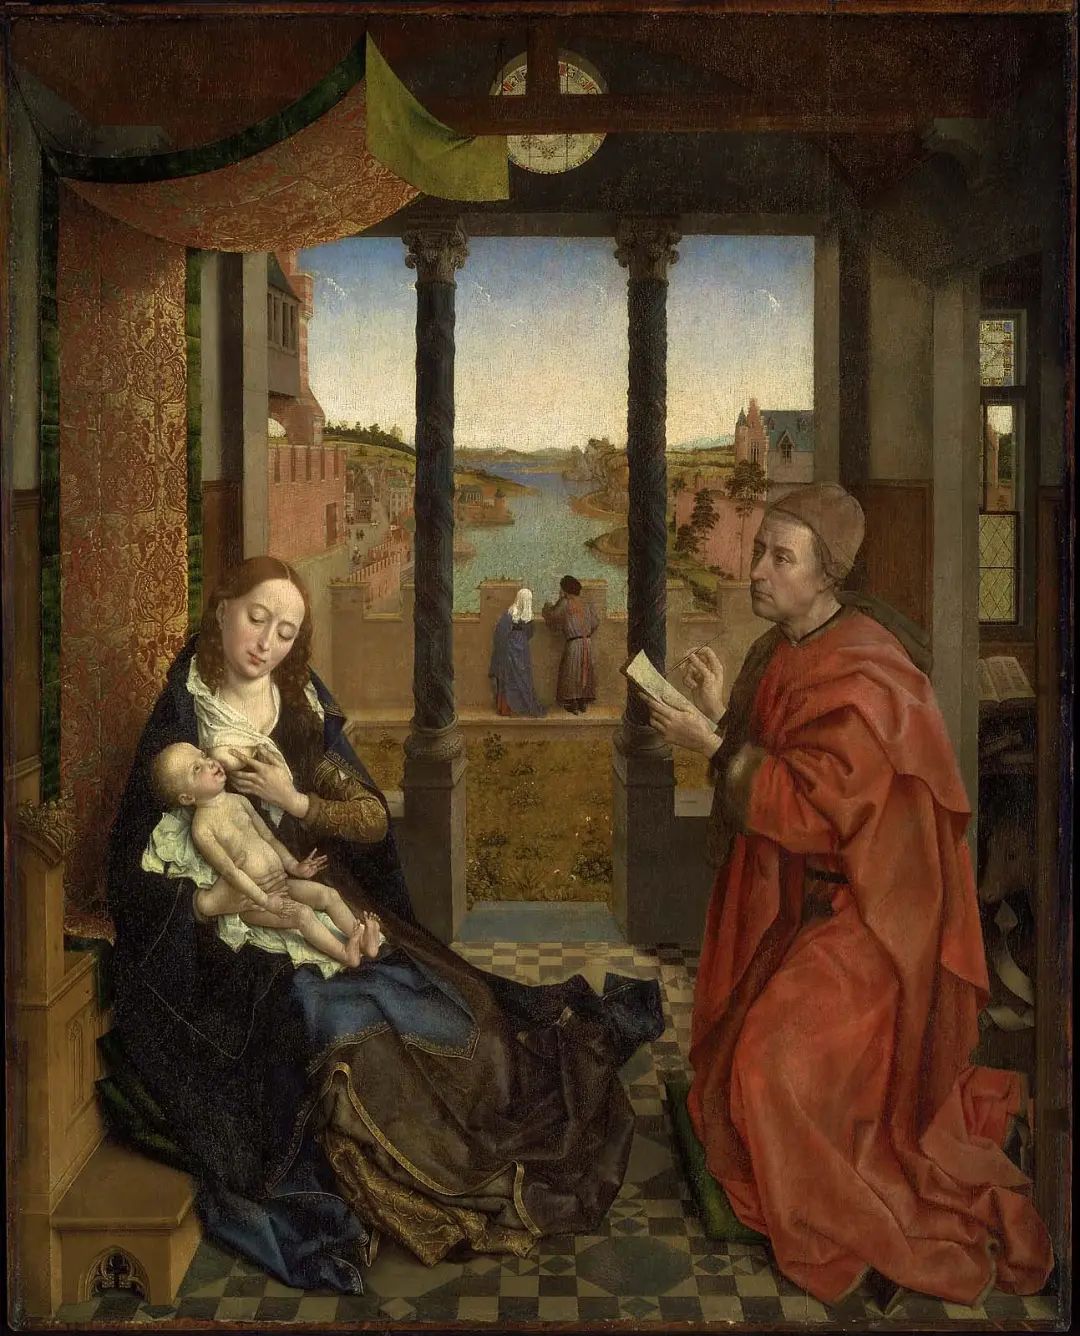 《圣路加画圣母像》，罗希尔·范德魏登，尼德兰，约1435年至1440年，木板蛋彩画、油画